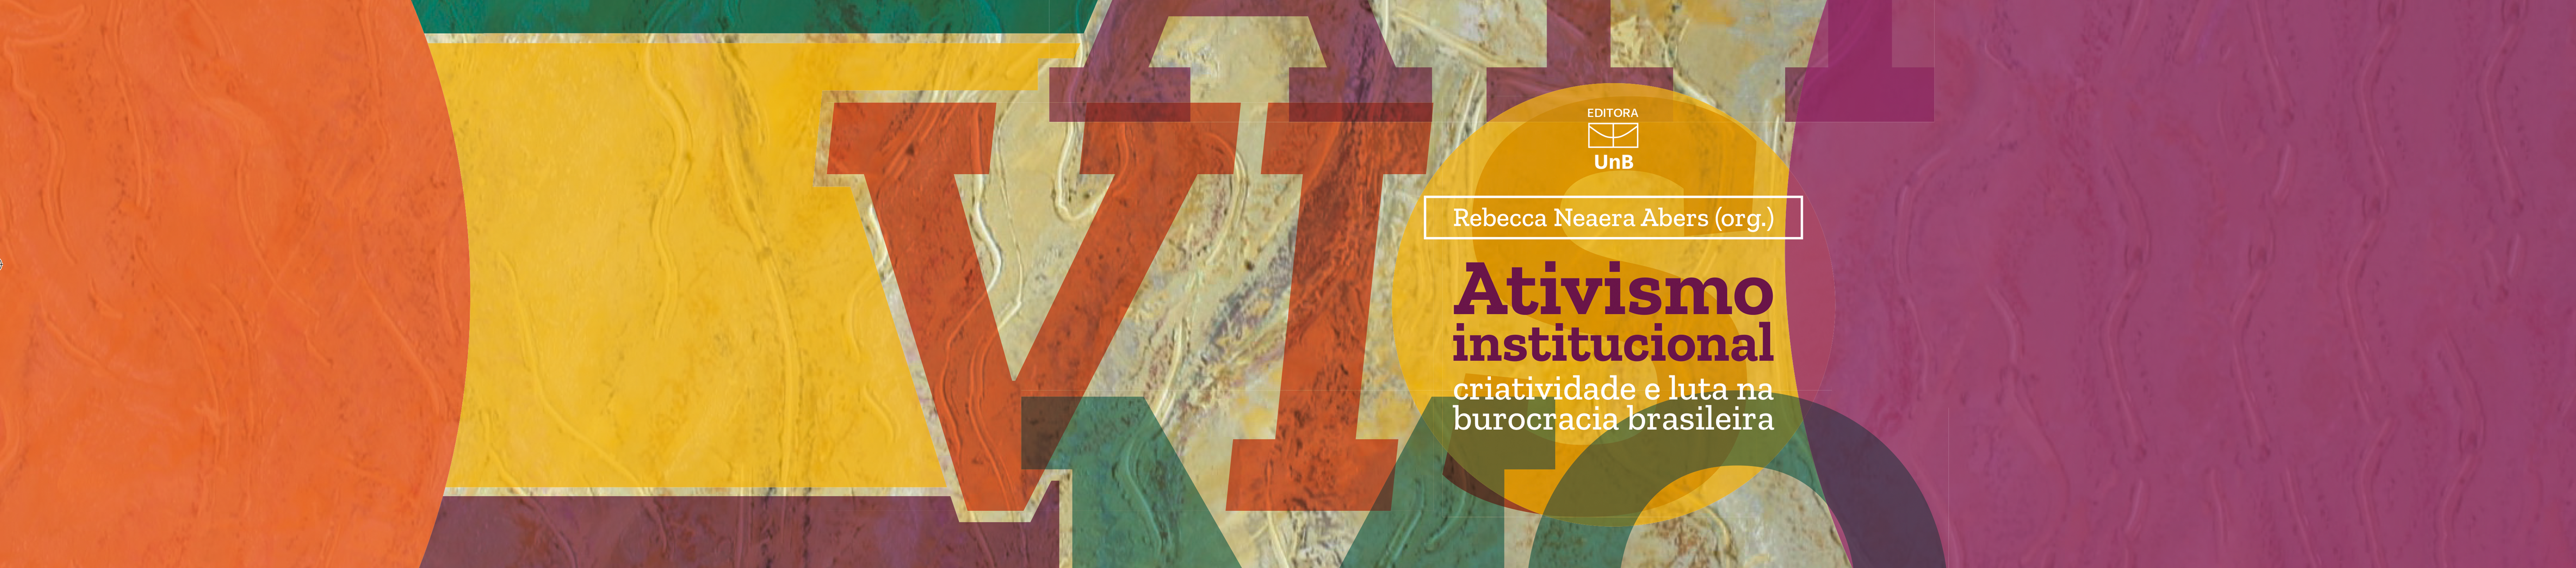 Ativismo institucional criatividade e luta na burocracia brasileira